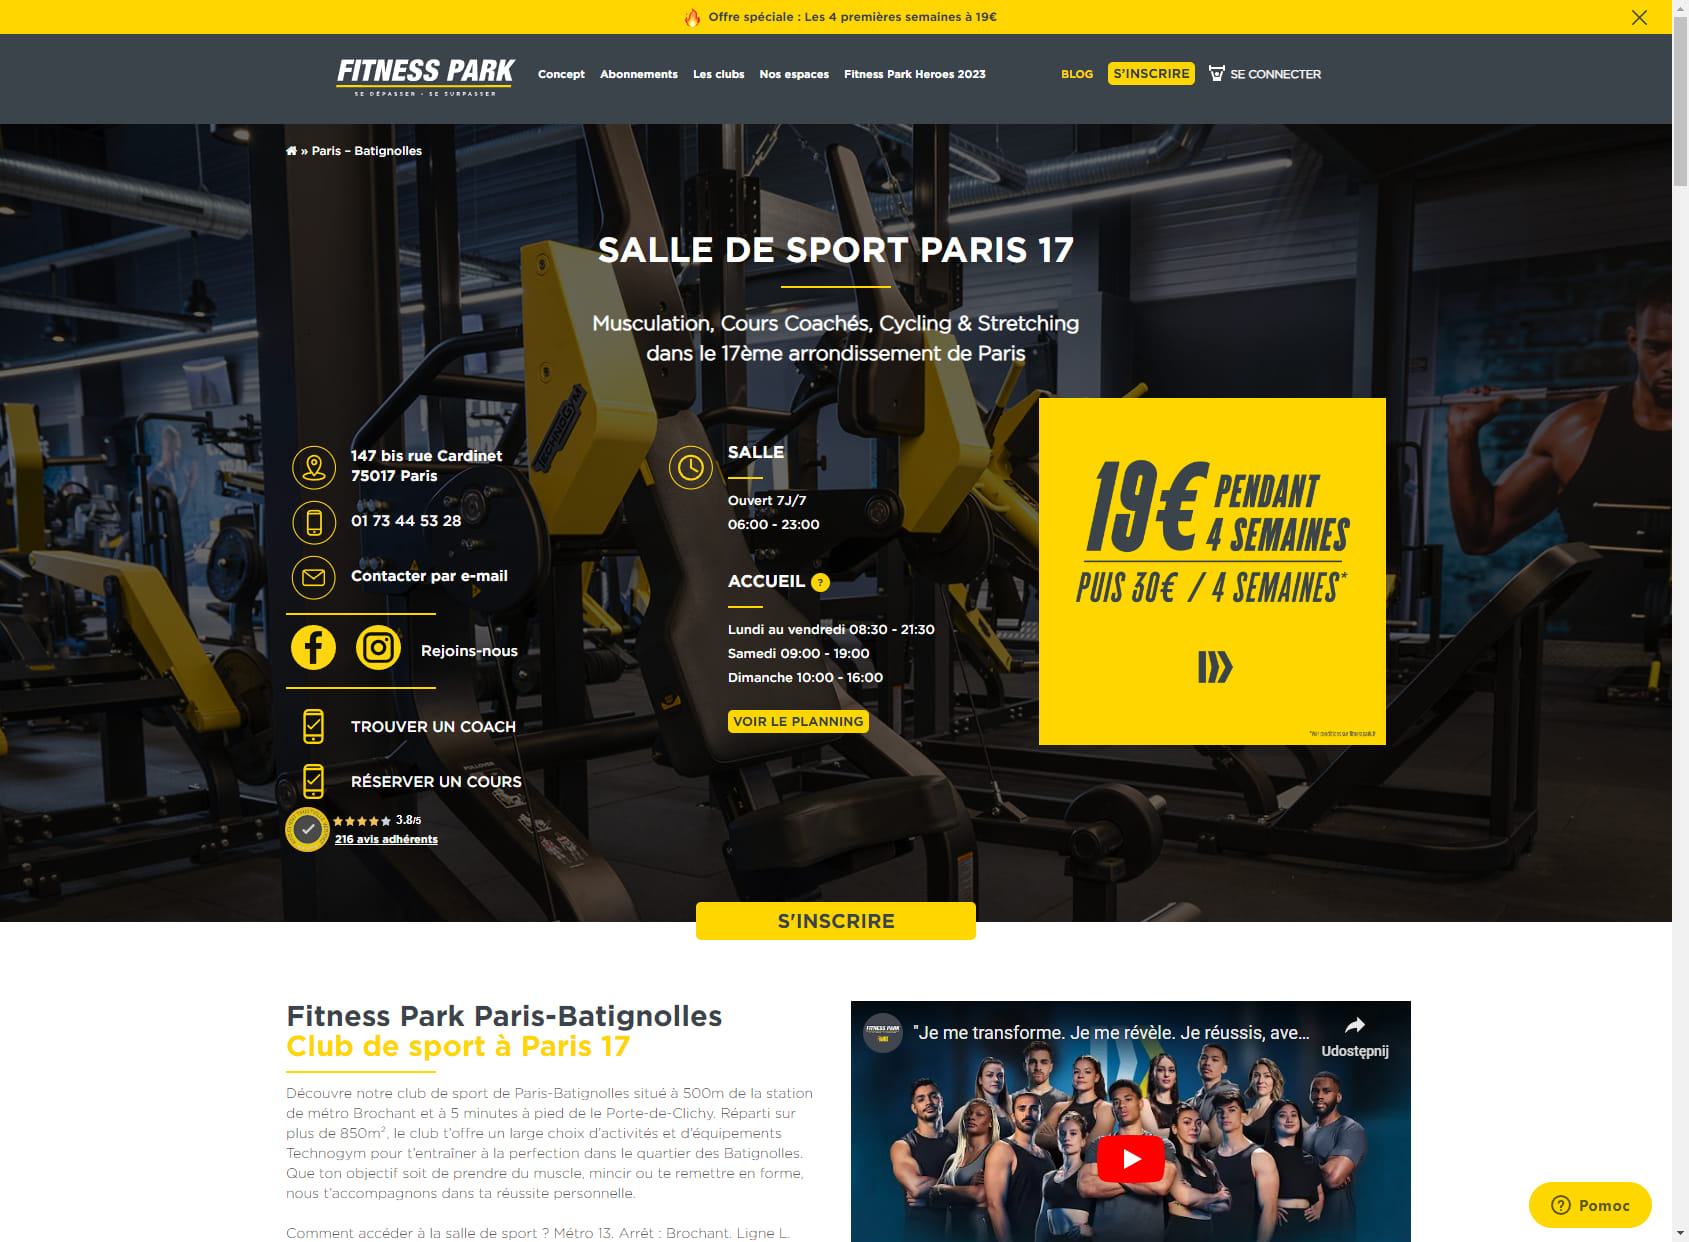 Salle de sport Paris 17 - Fitness Park Batignolles